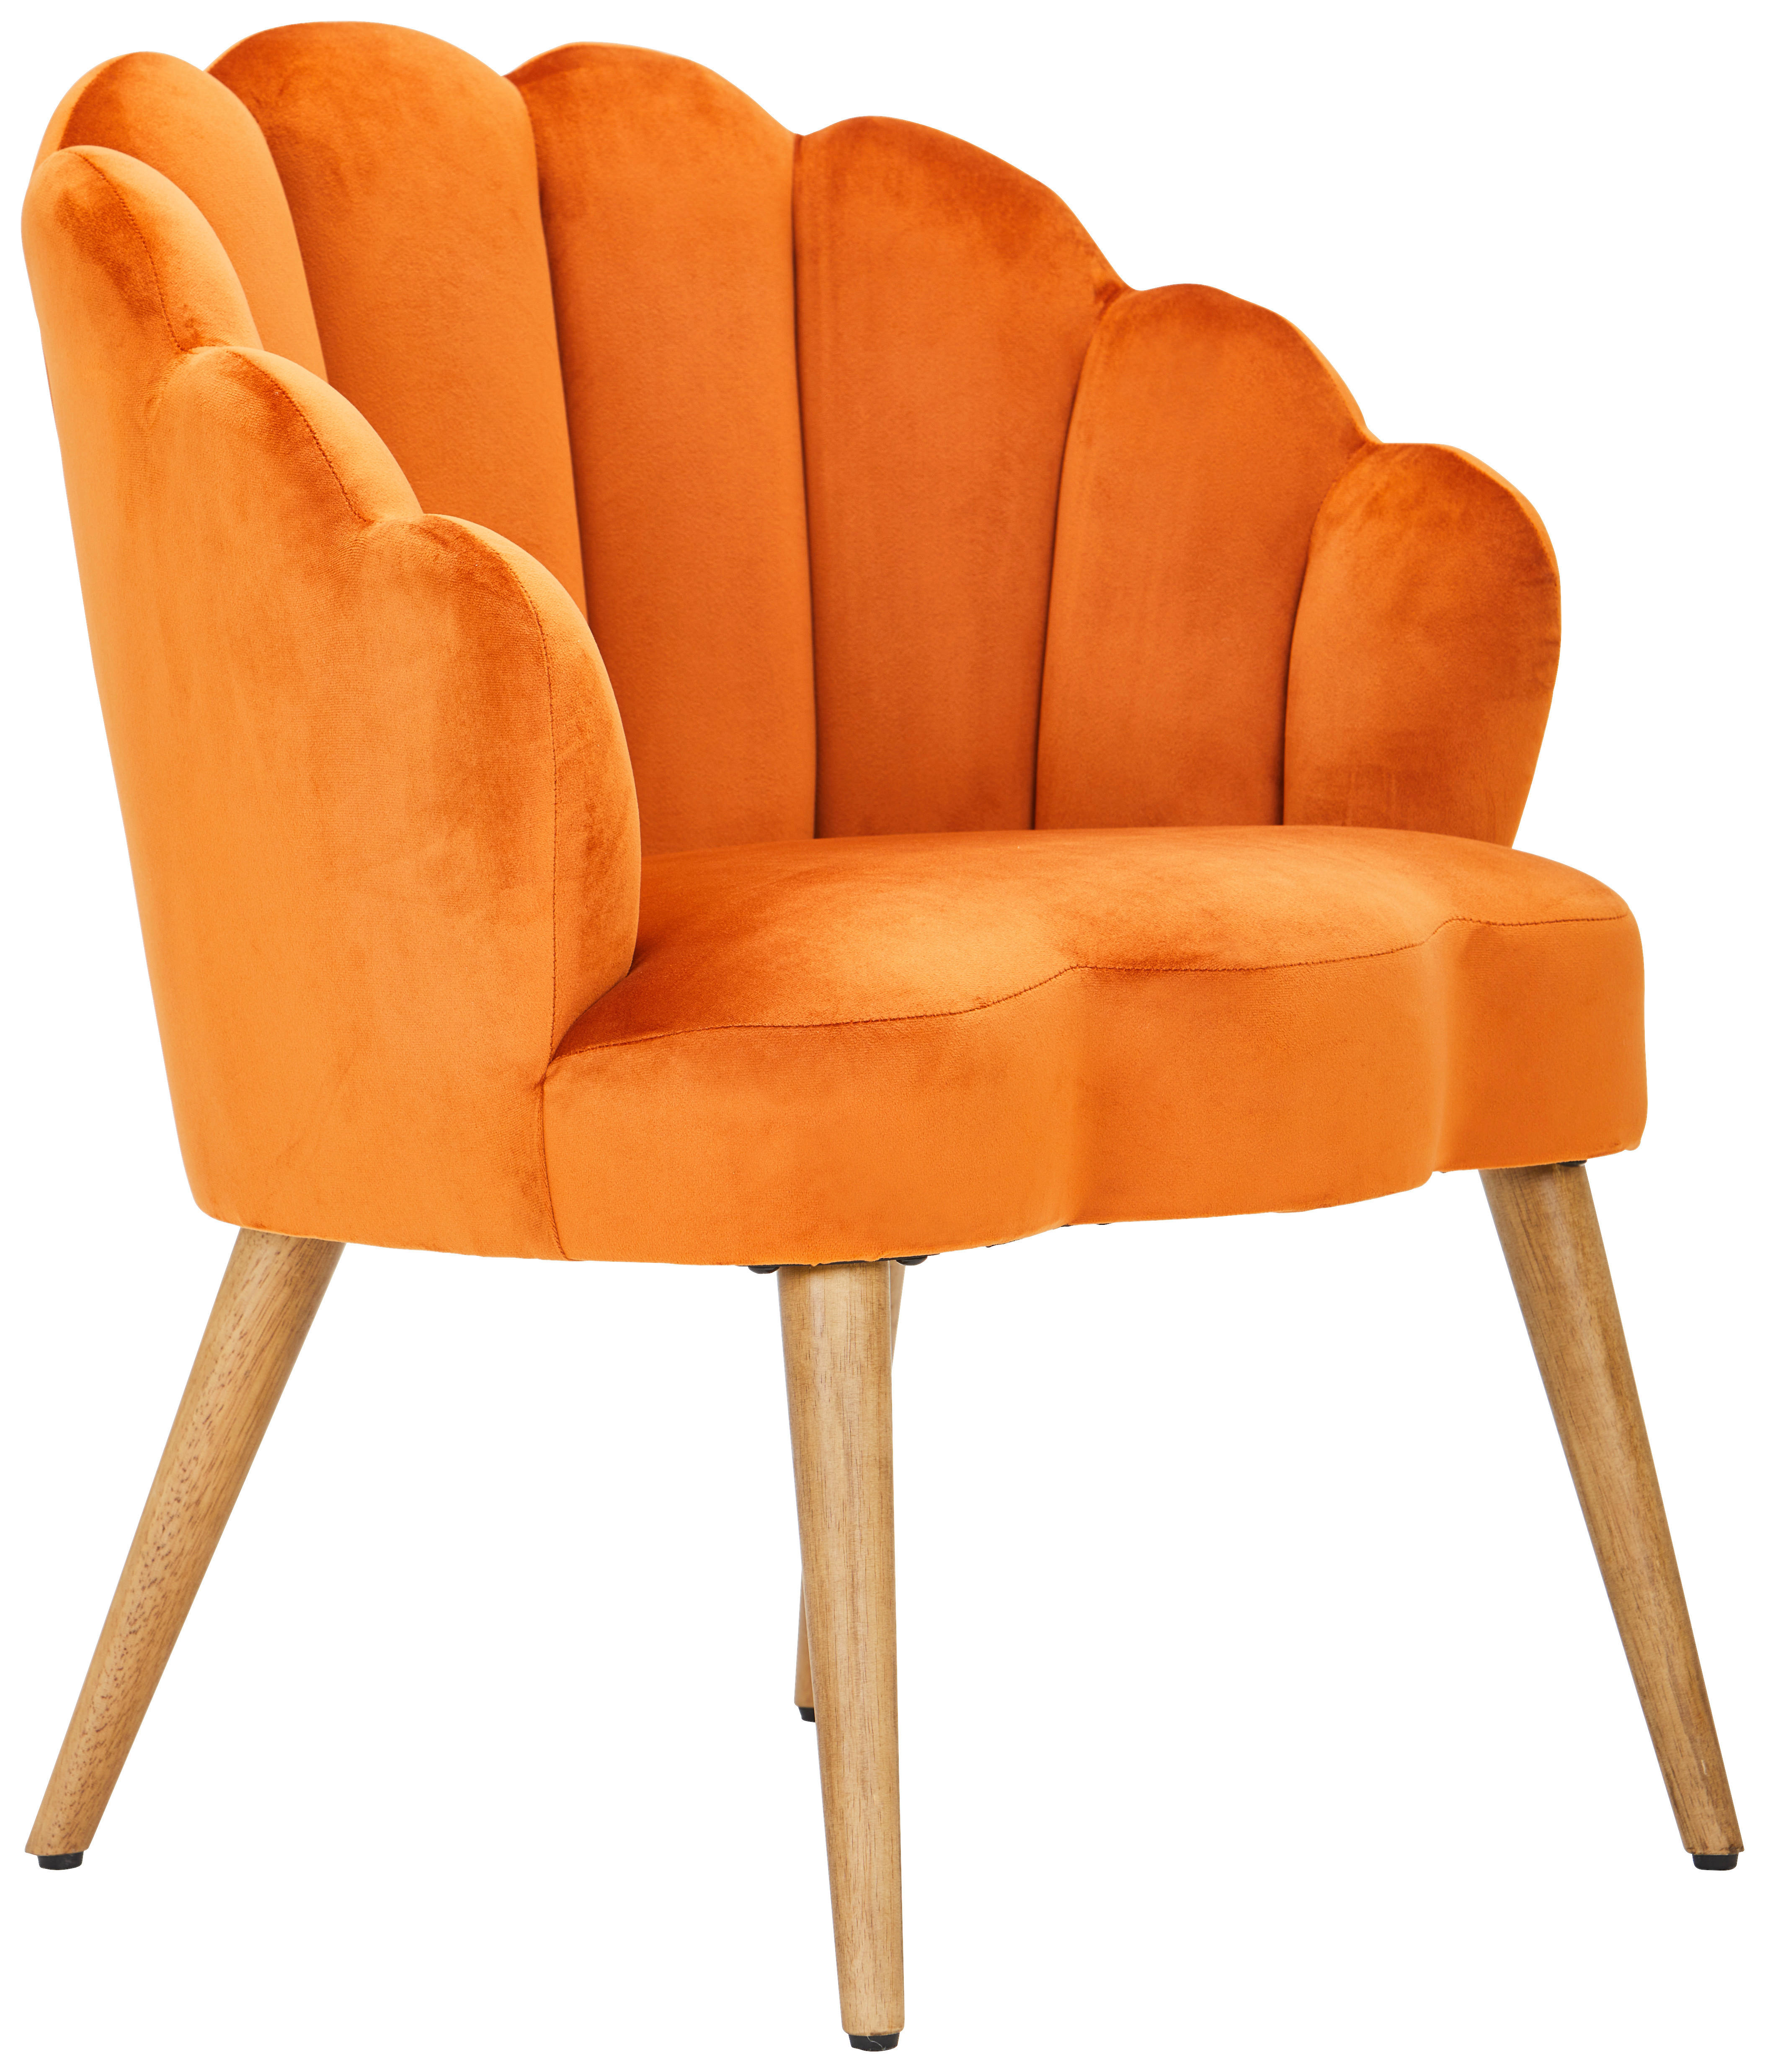 SESSEL in Samt Orange, Ecru  - Ecru/Orange, Design, Holz/Textil (67/80/65cm) - MID.YOU